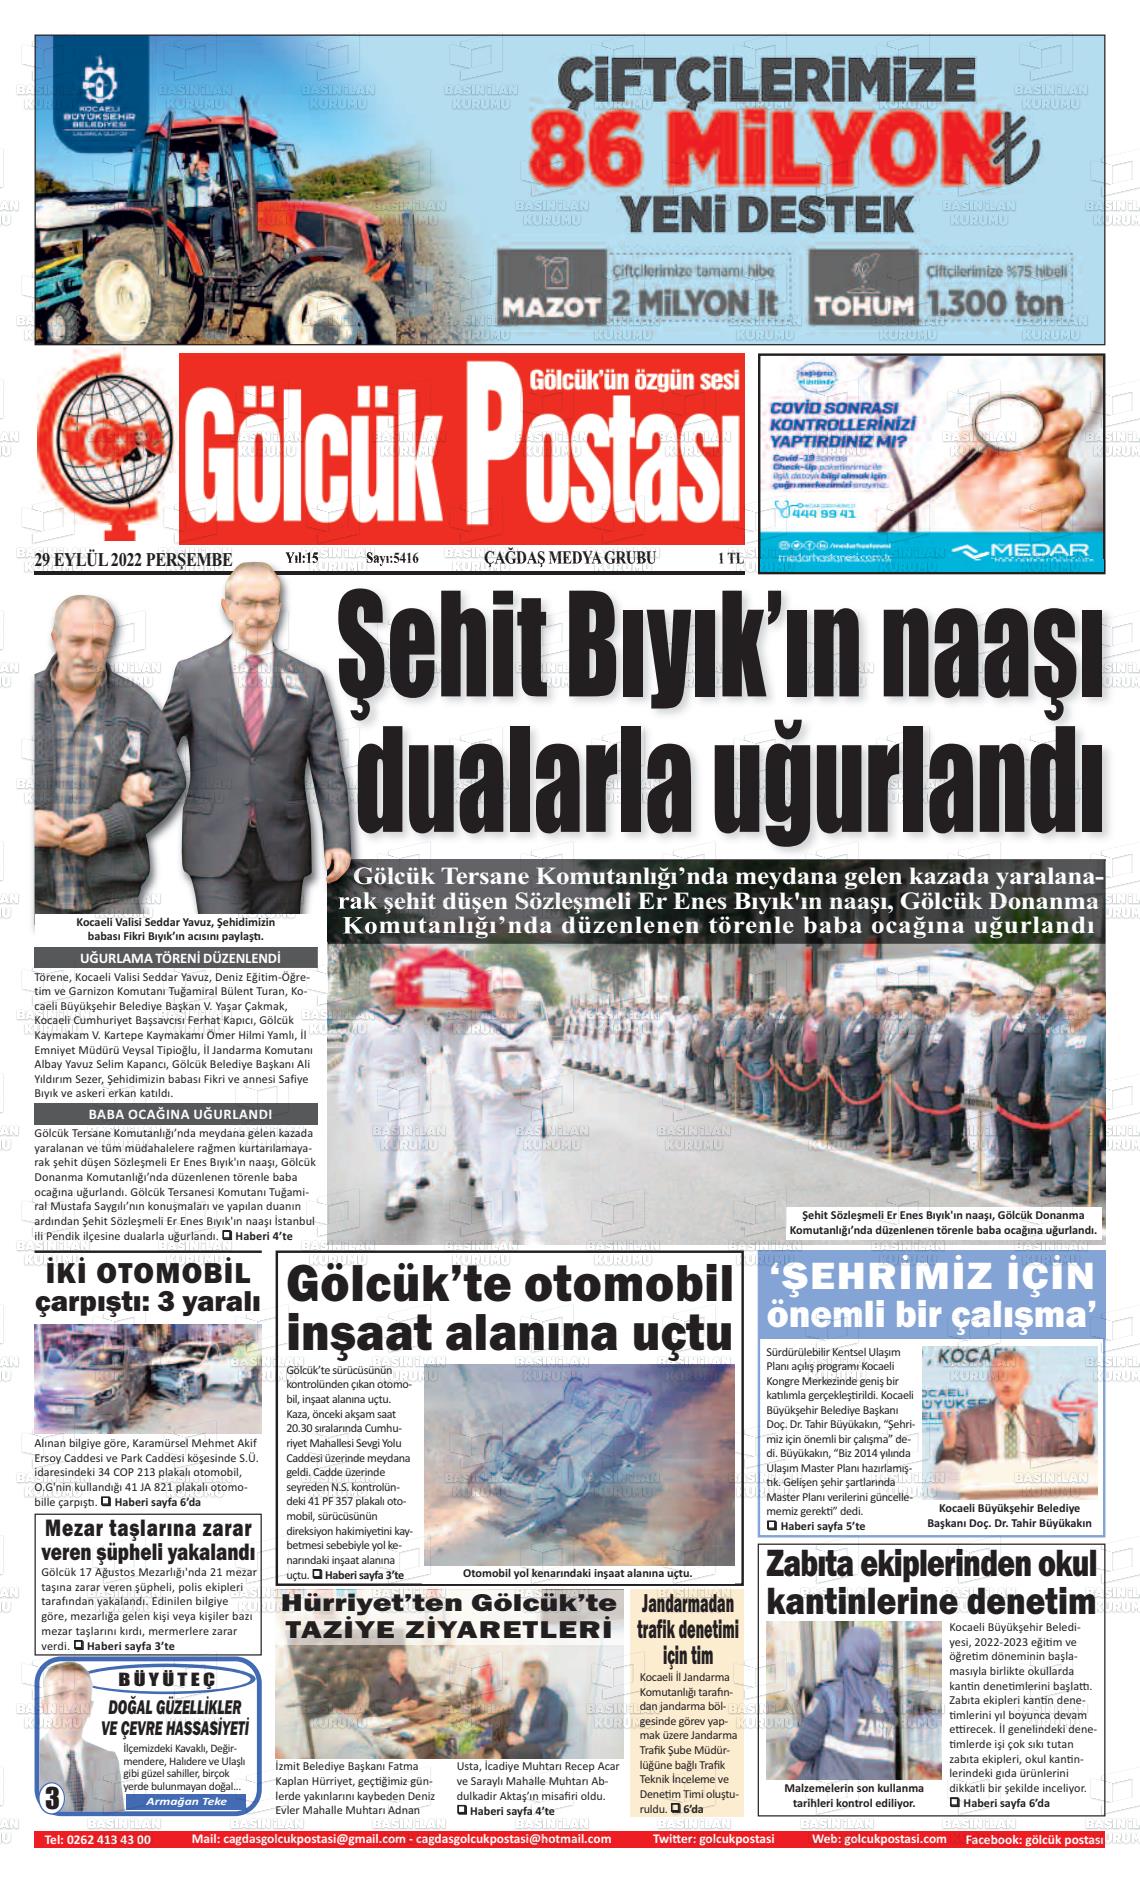 29 Eylül 2022 Gölcük Postasi Gazete Manşeti